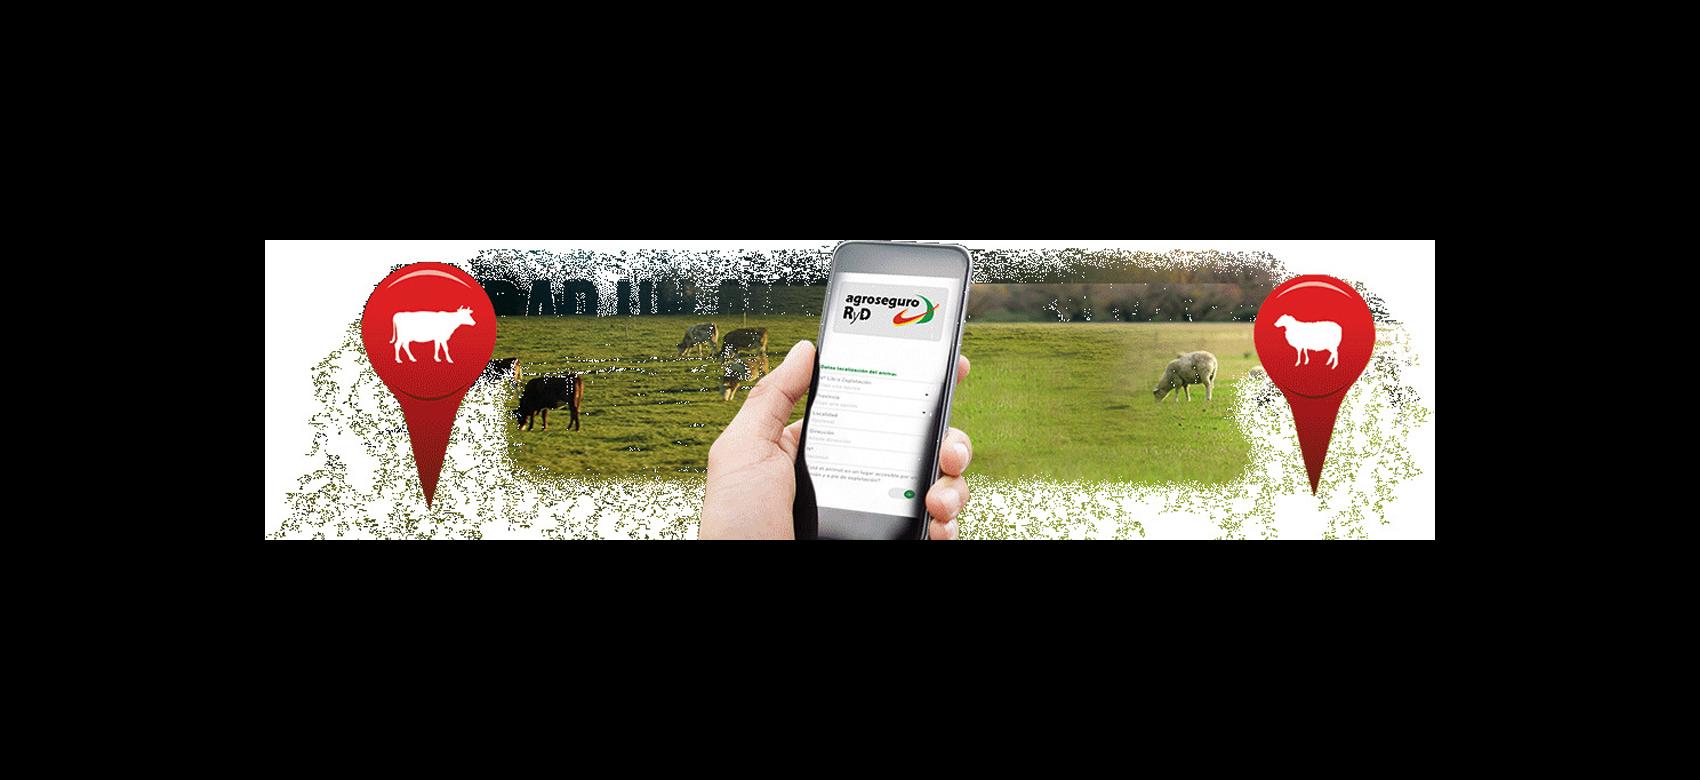 Mano con teléfono móvil con la App Retirada de animales muertos en la pantalla sobre fotografía de ganado pastando